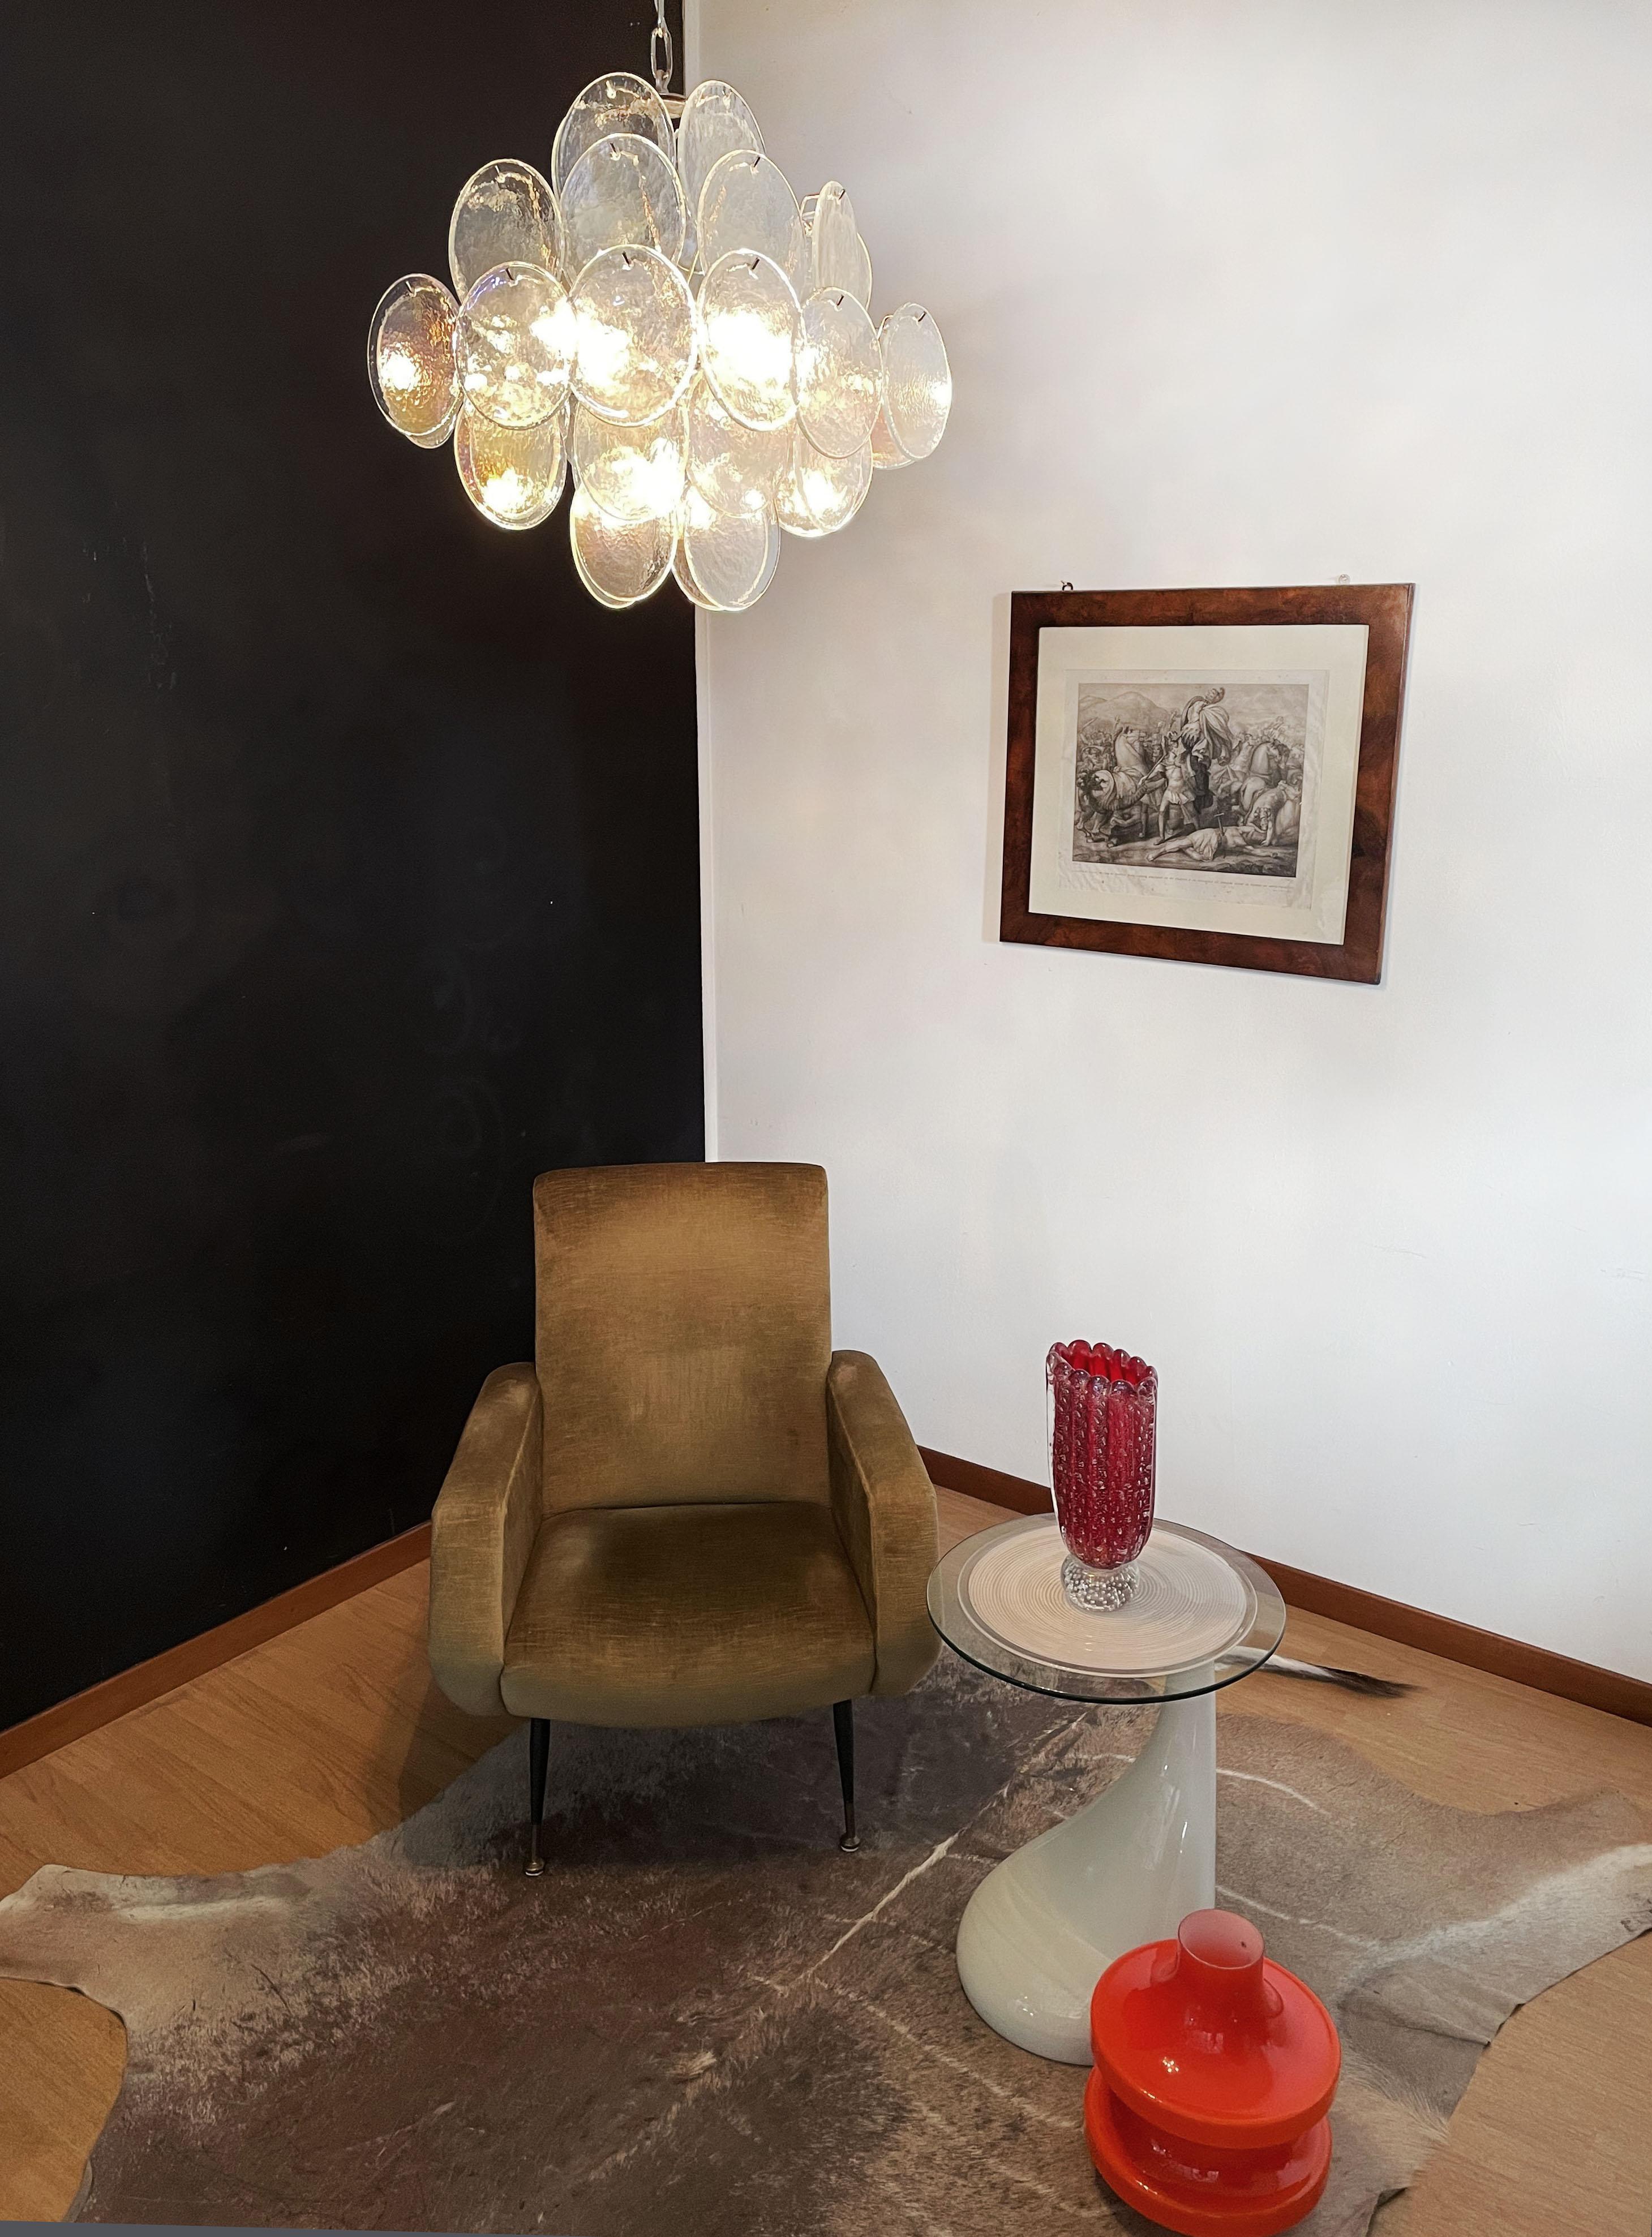 Vintage Italian Murano chandelier - 36 iridescent disks In Good Condition For Sale In Gaiarine Frazione Francenigo (TV), IT